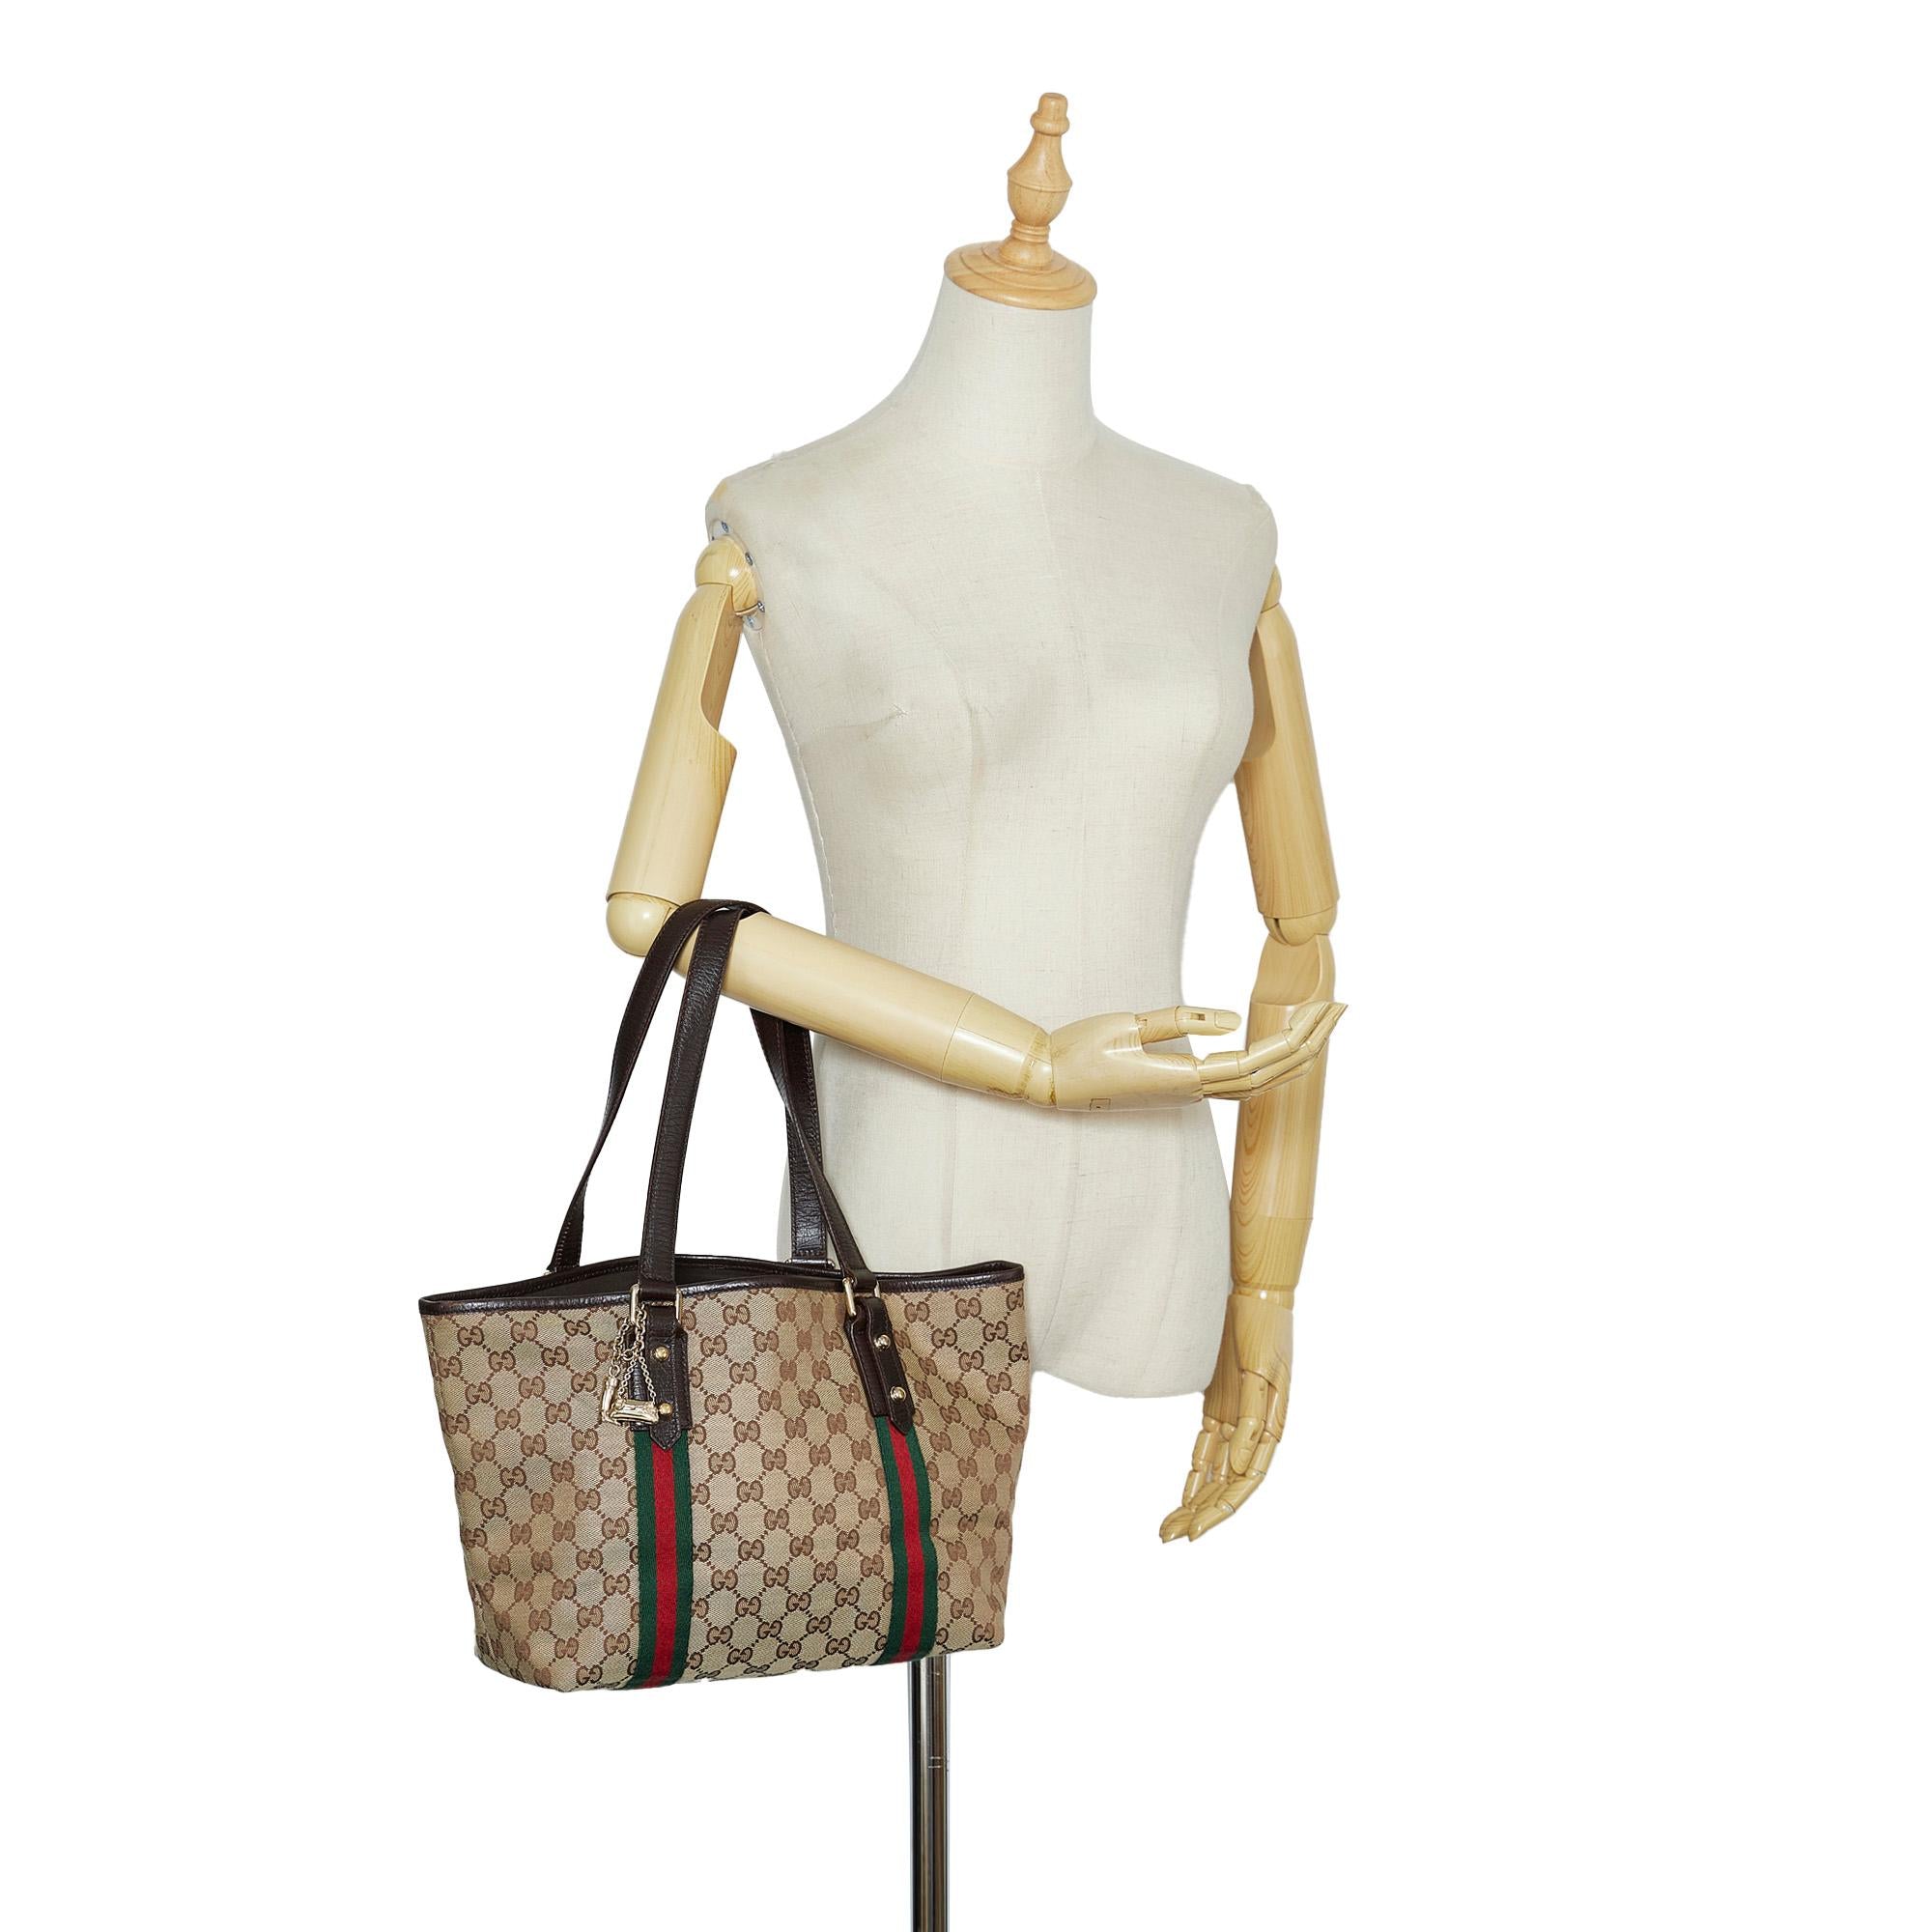 Gucci GG Canvas Jolicoeur Handbag